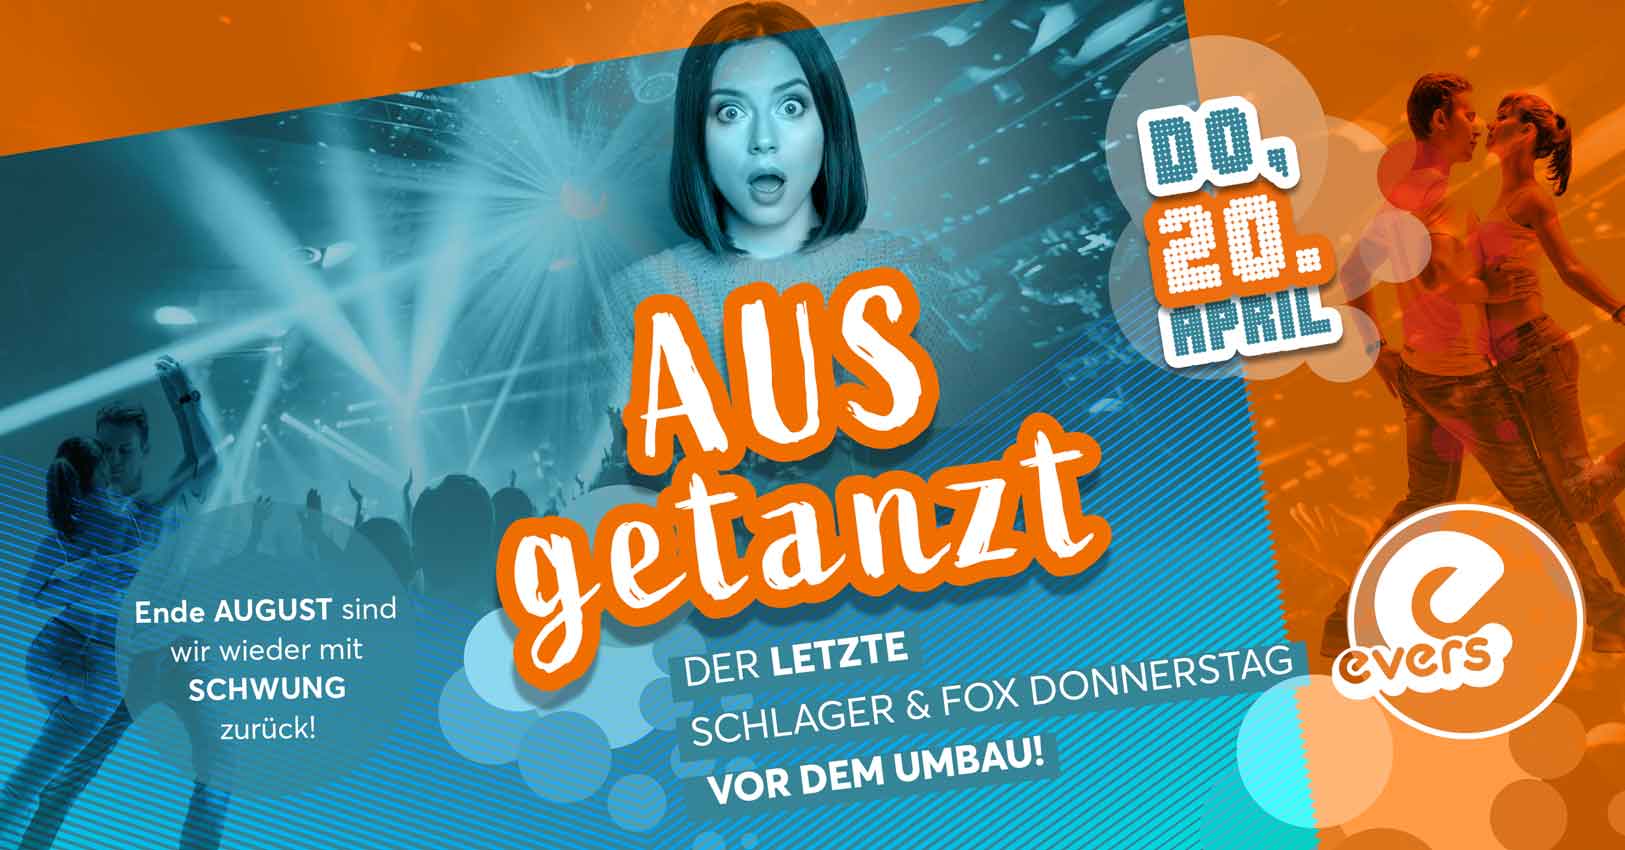 Ausgetanzt - Der letzte Schlager & Fox Donnerstag vorm Umbau | DO 20.04.